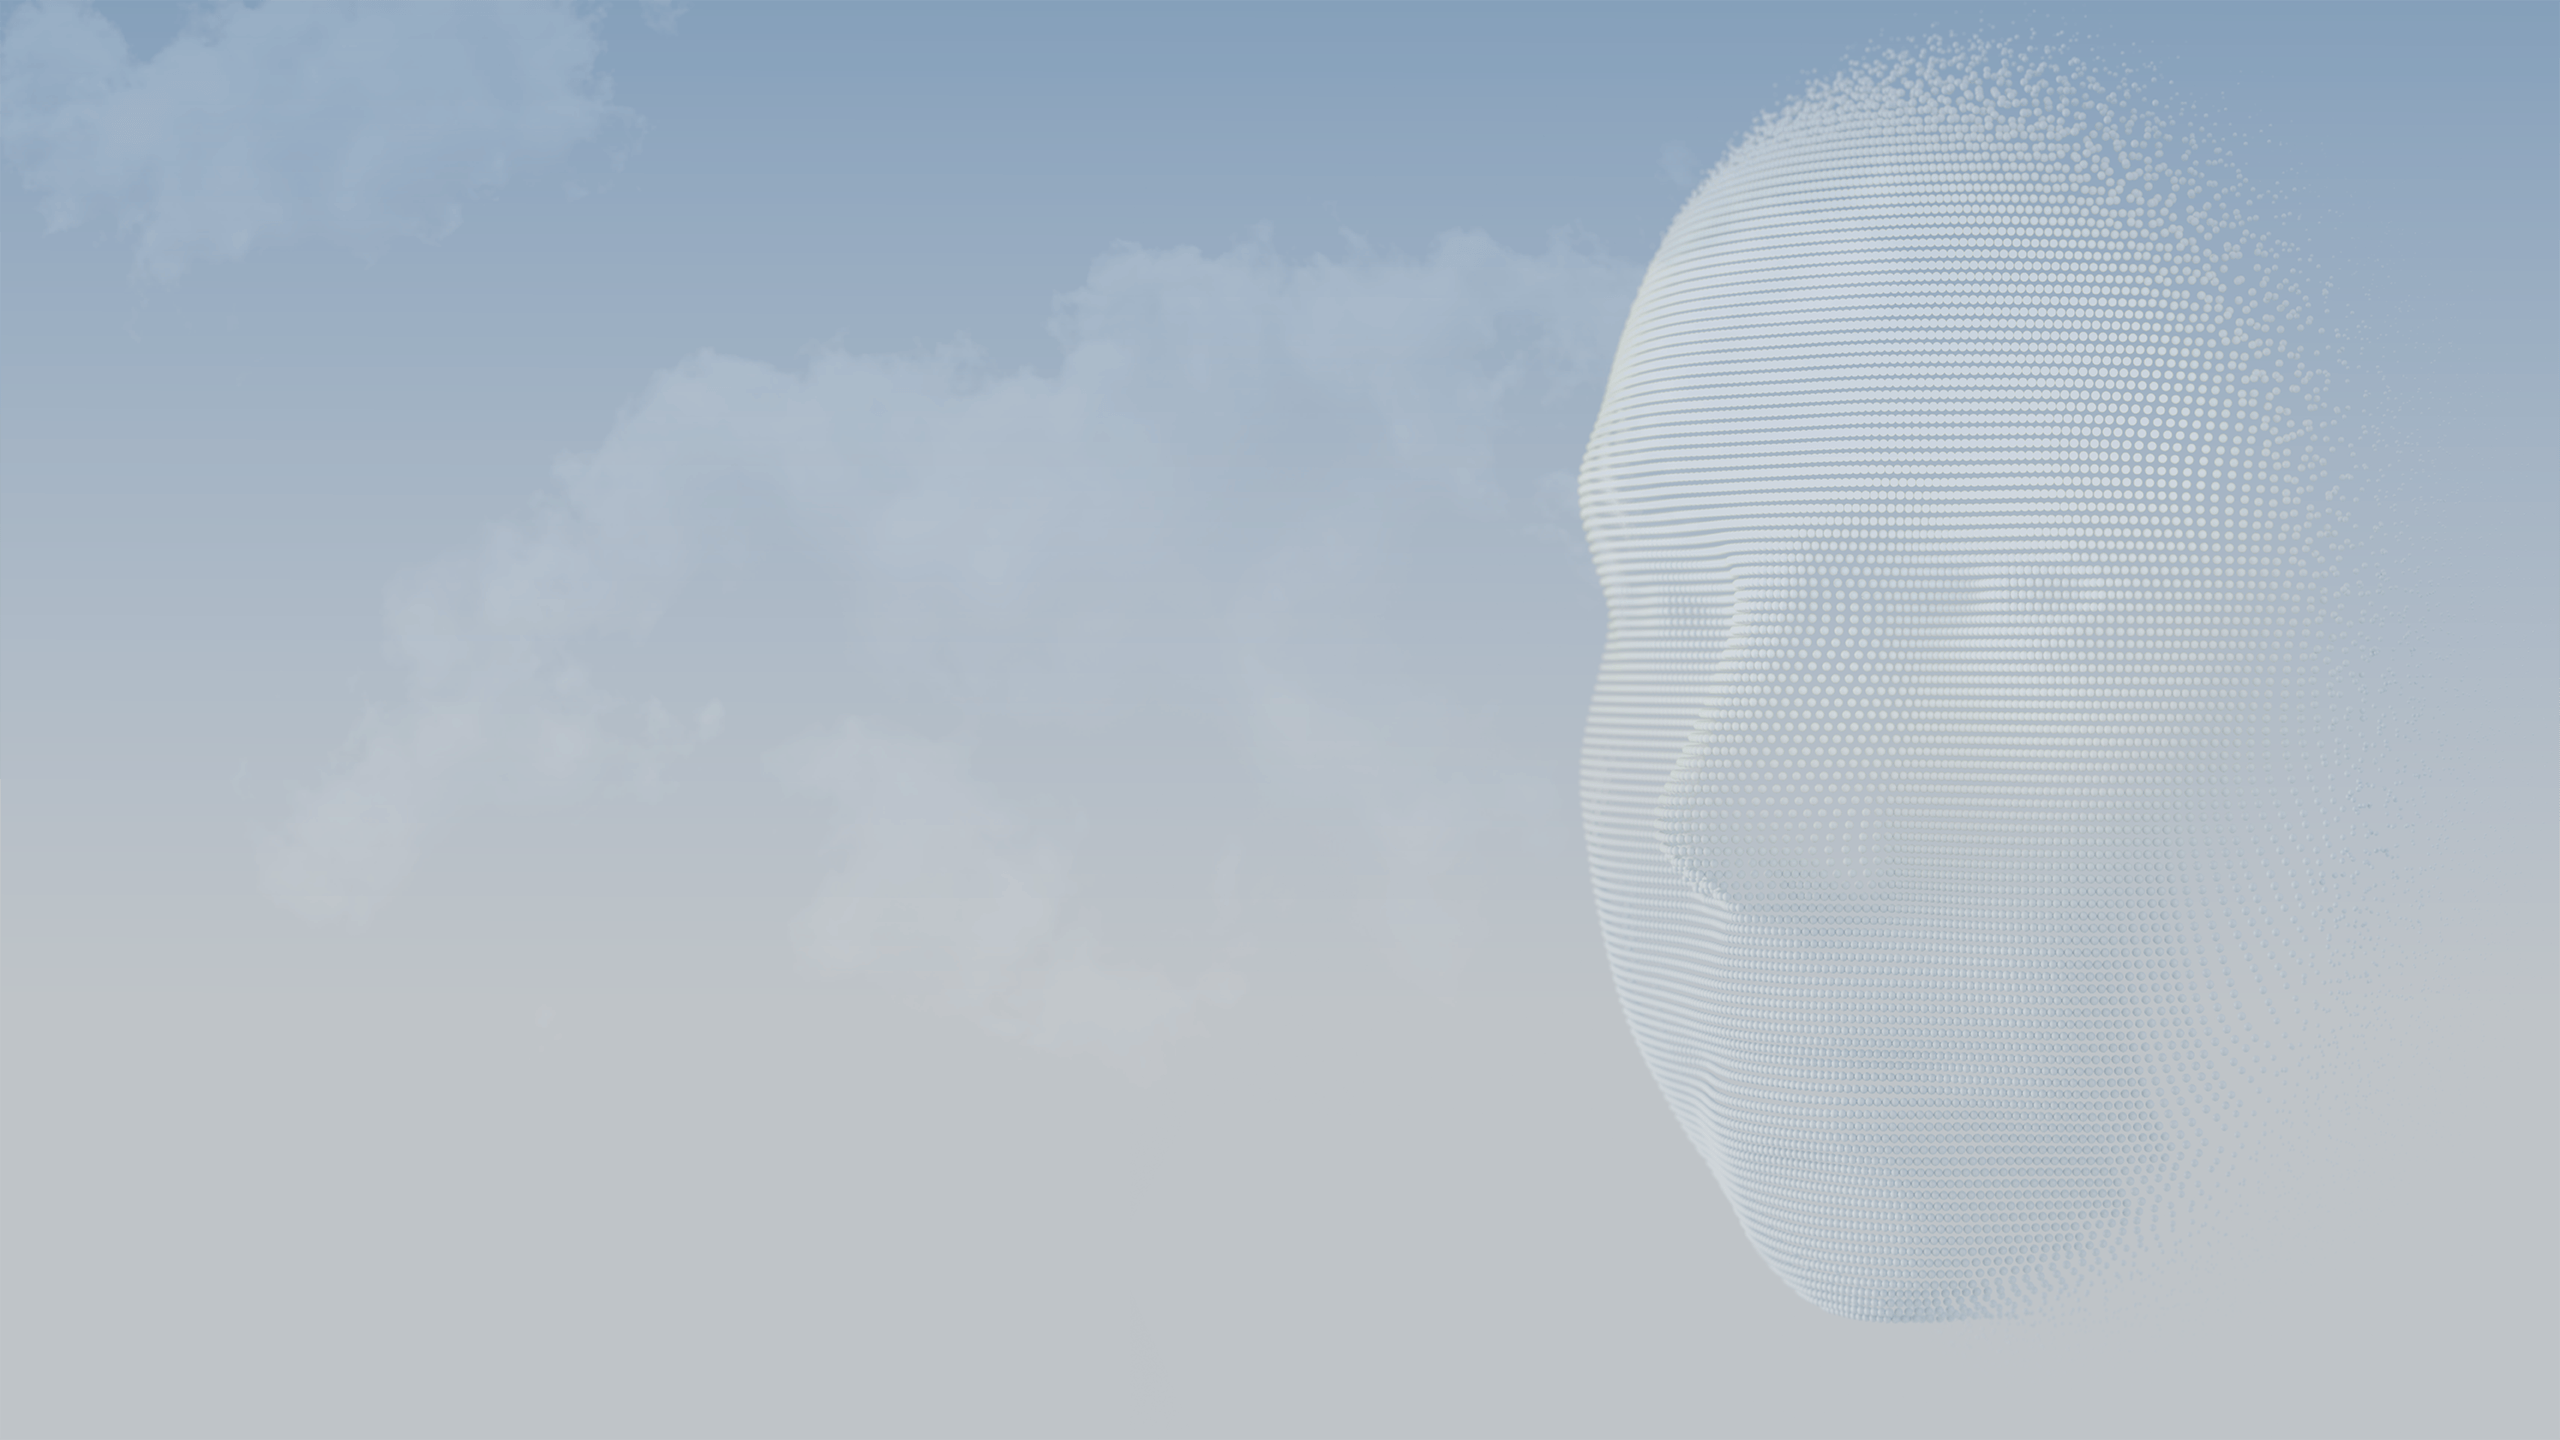 Las esferas 3D forman el rostro de una persona contra un cielo azul.